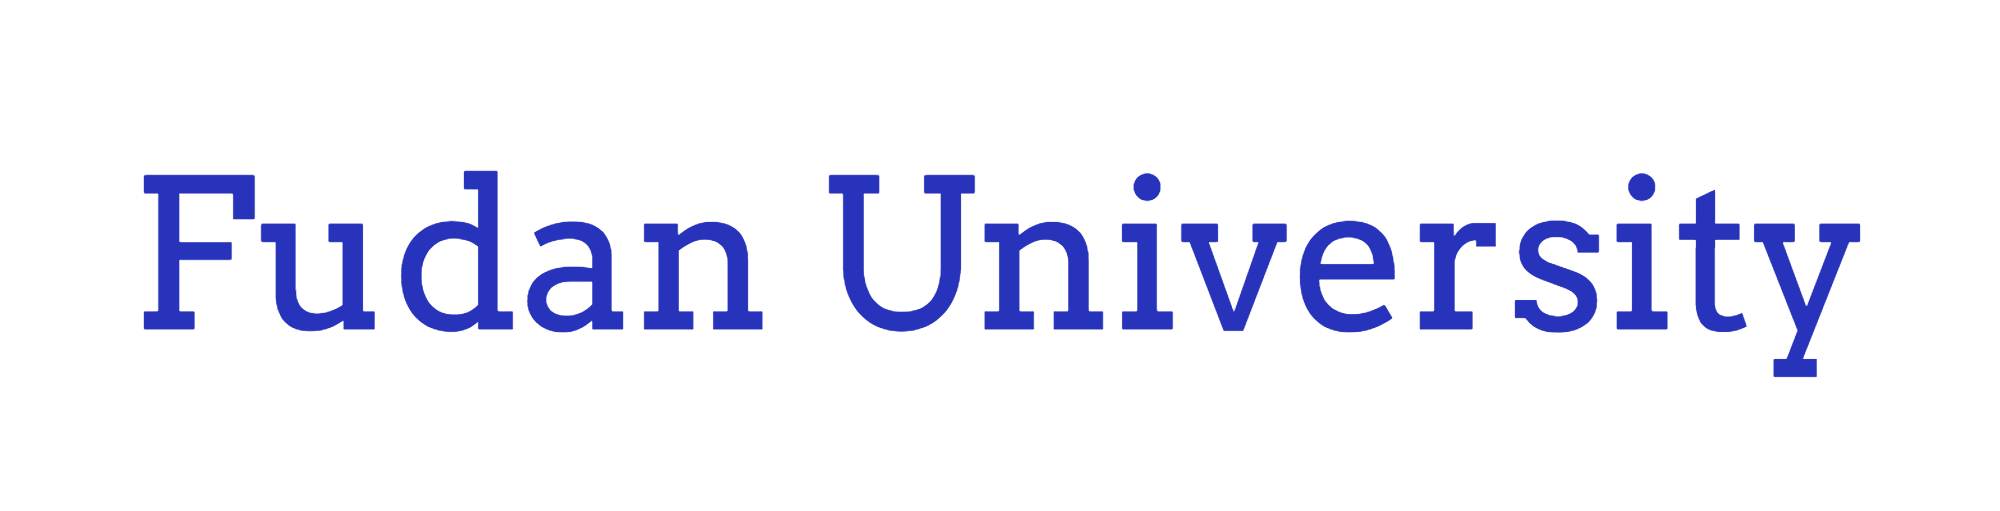 Fudan University-logo.png